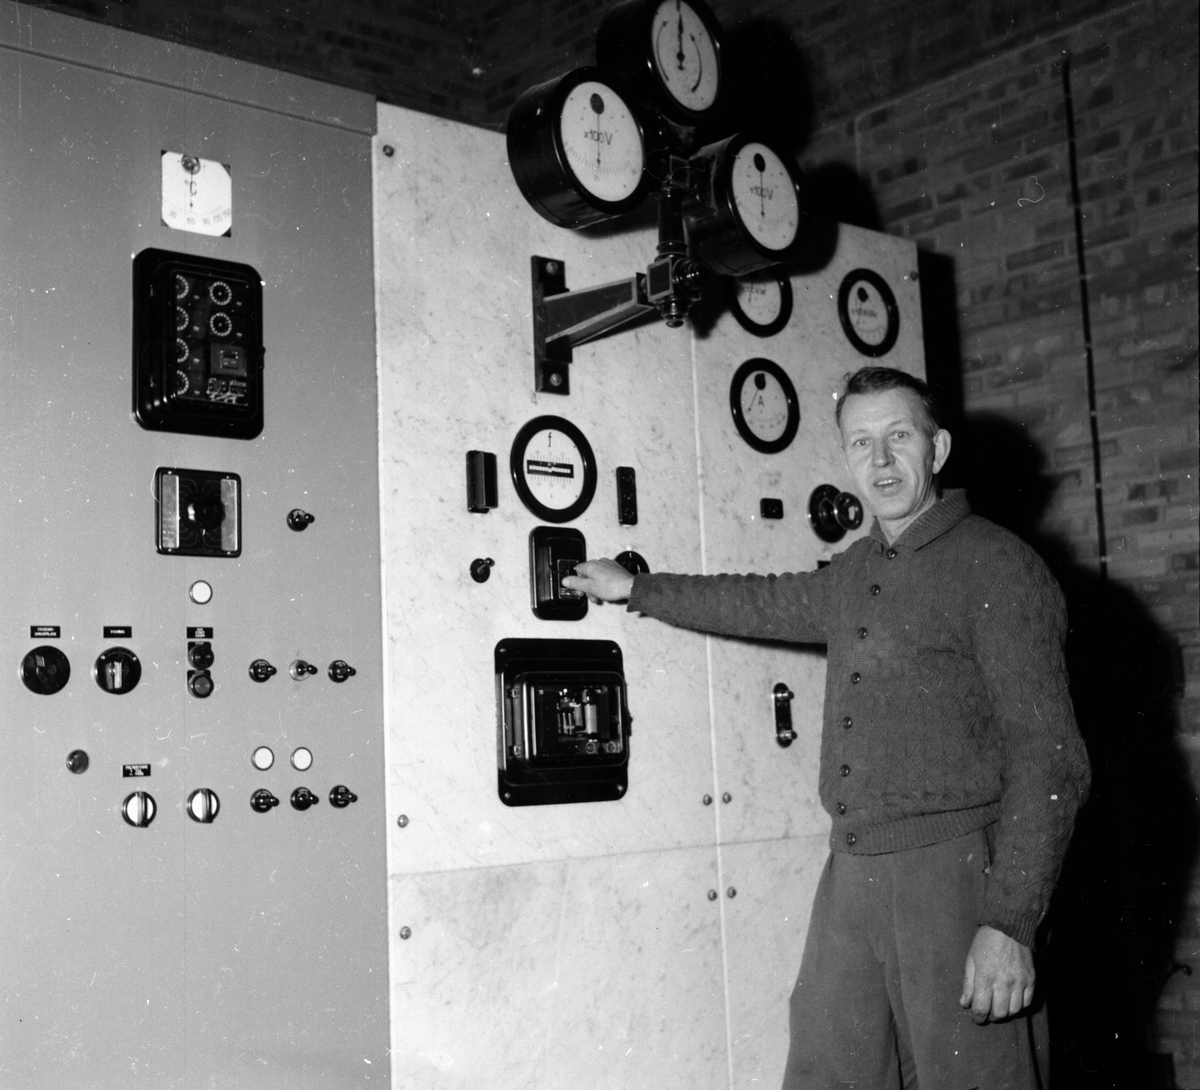 Valhaga kraftverk.
Edsbyn 2/12 1956